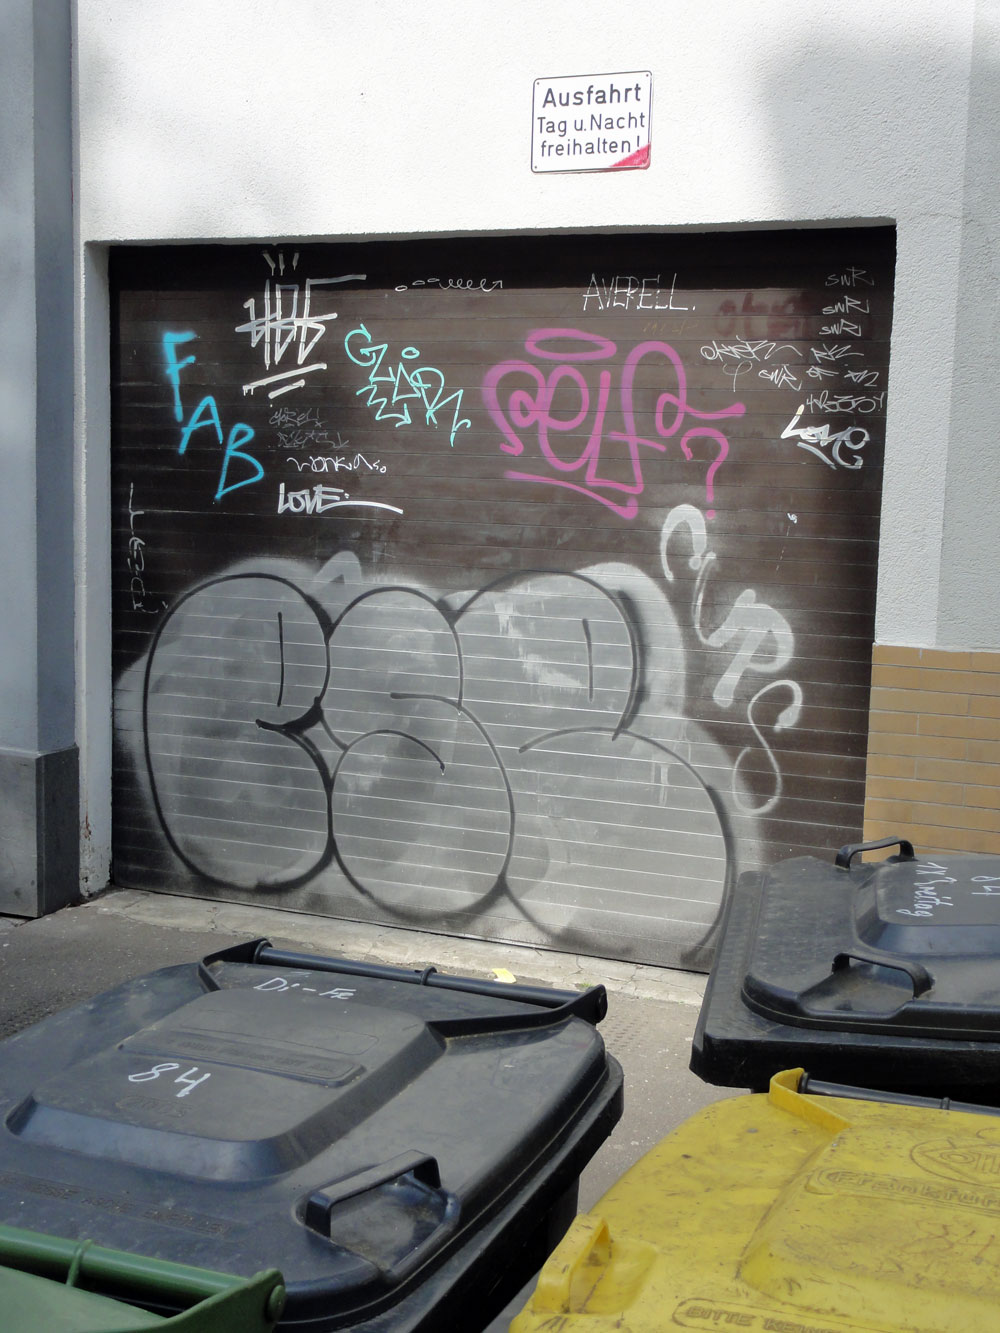 Shutter Art & Garage Door Graffiti in Frankfurt: ESC